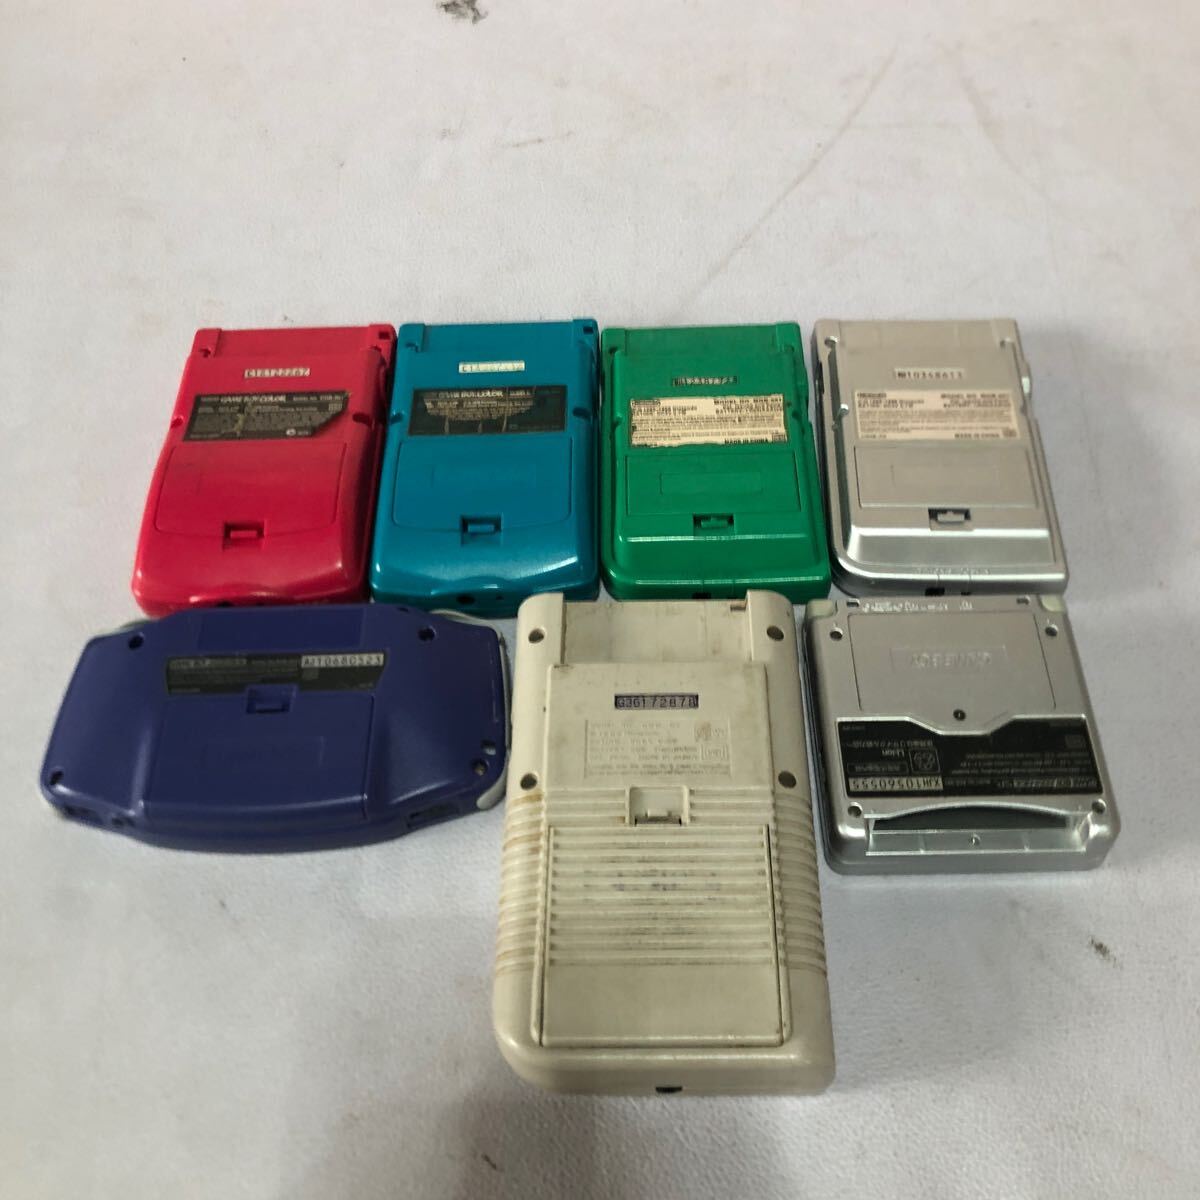  nintendo Nintendo Game Boy серии advance продажа комплектом много 7 шт. работоспособность не проверялась не проверено утиль 